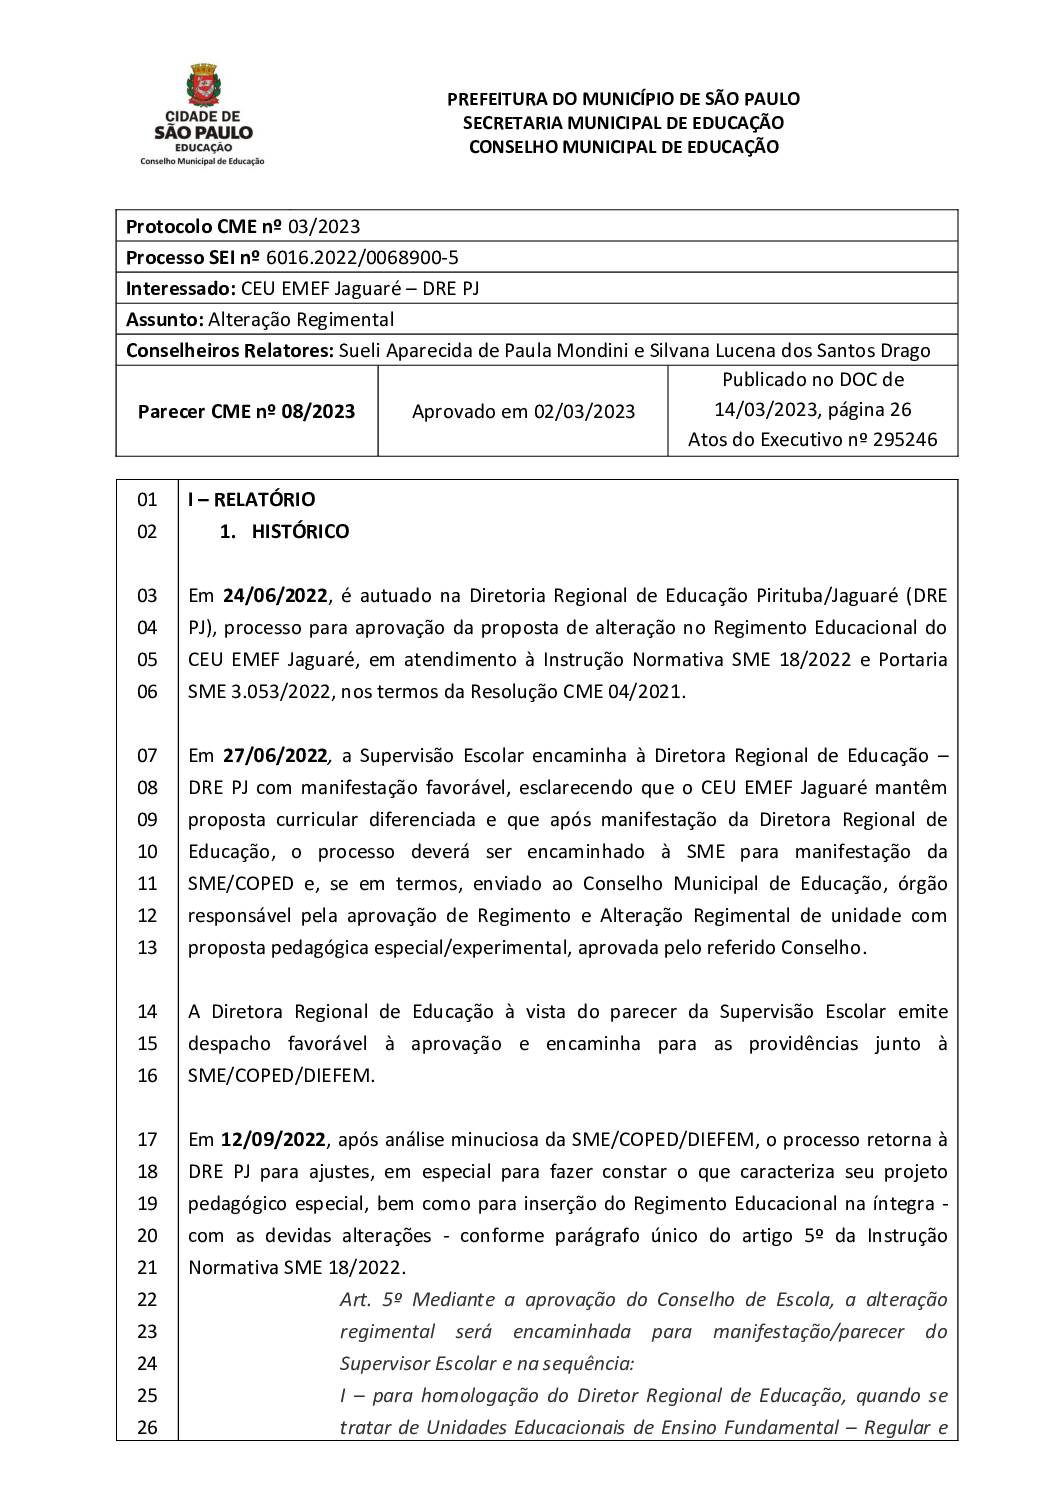 Parecer CME nº 08/2023 - CEU EMEF Jaguaré (DRE PJ) - Alteração de Regimento Educacional de Projeto Especial